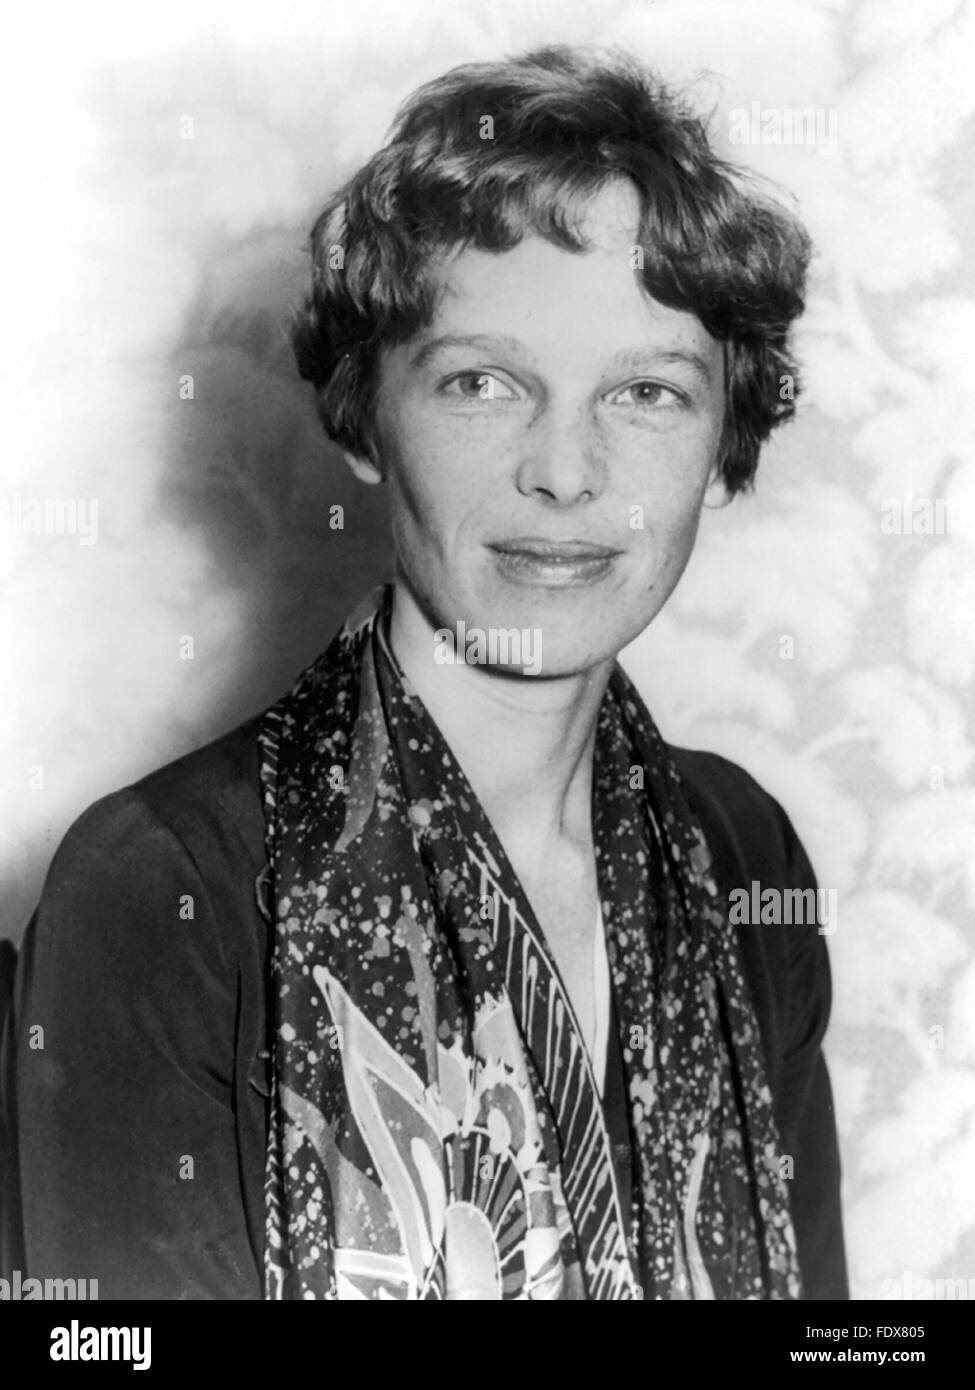 Amelia Earhart, le célèbre aviateur, ch. 1928 Banque D'Images